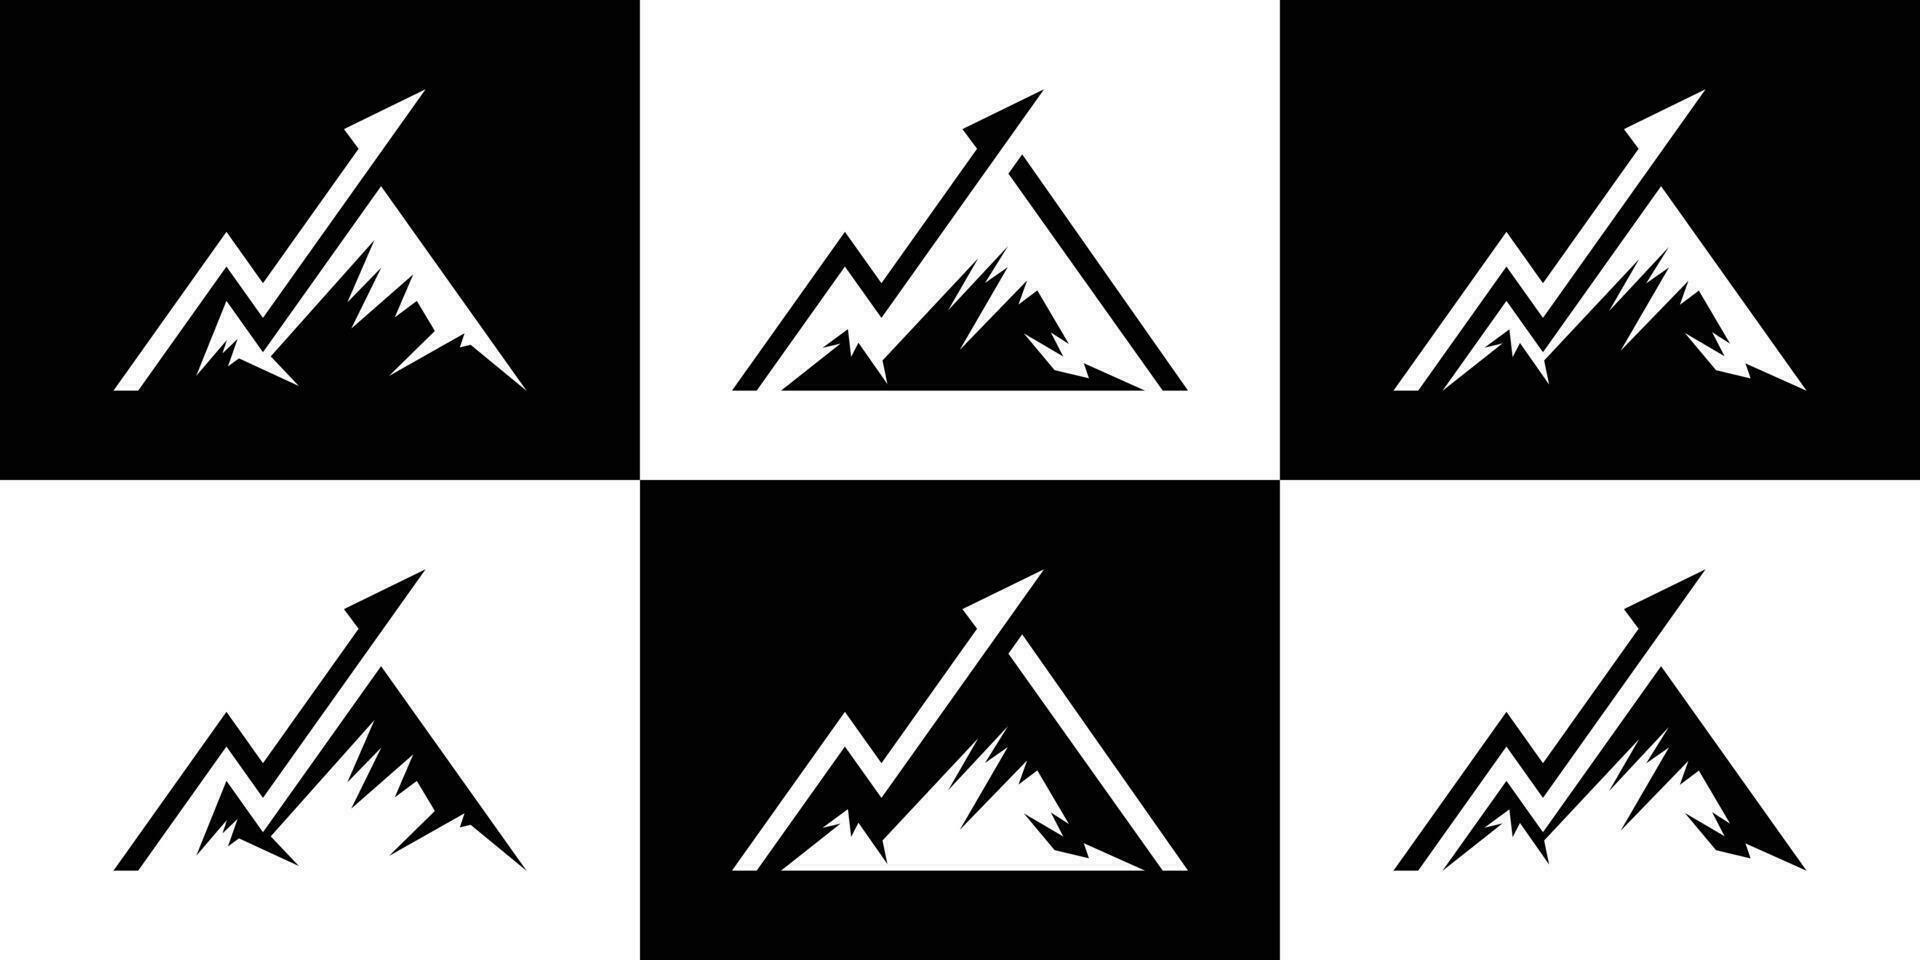 logo design creative mountain and arrow financial icon vector illustration 2